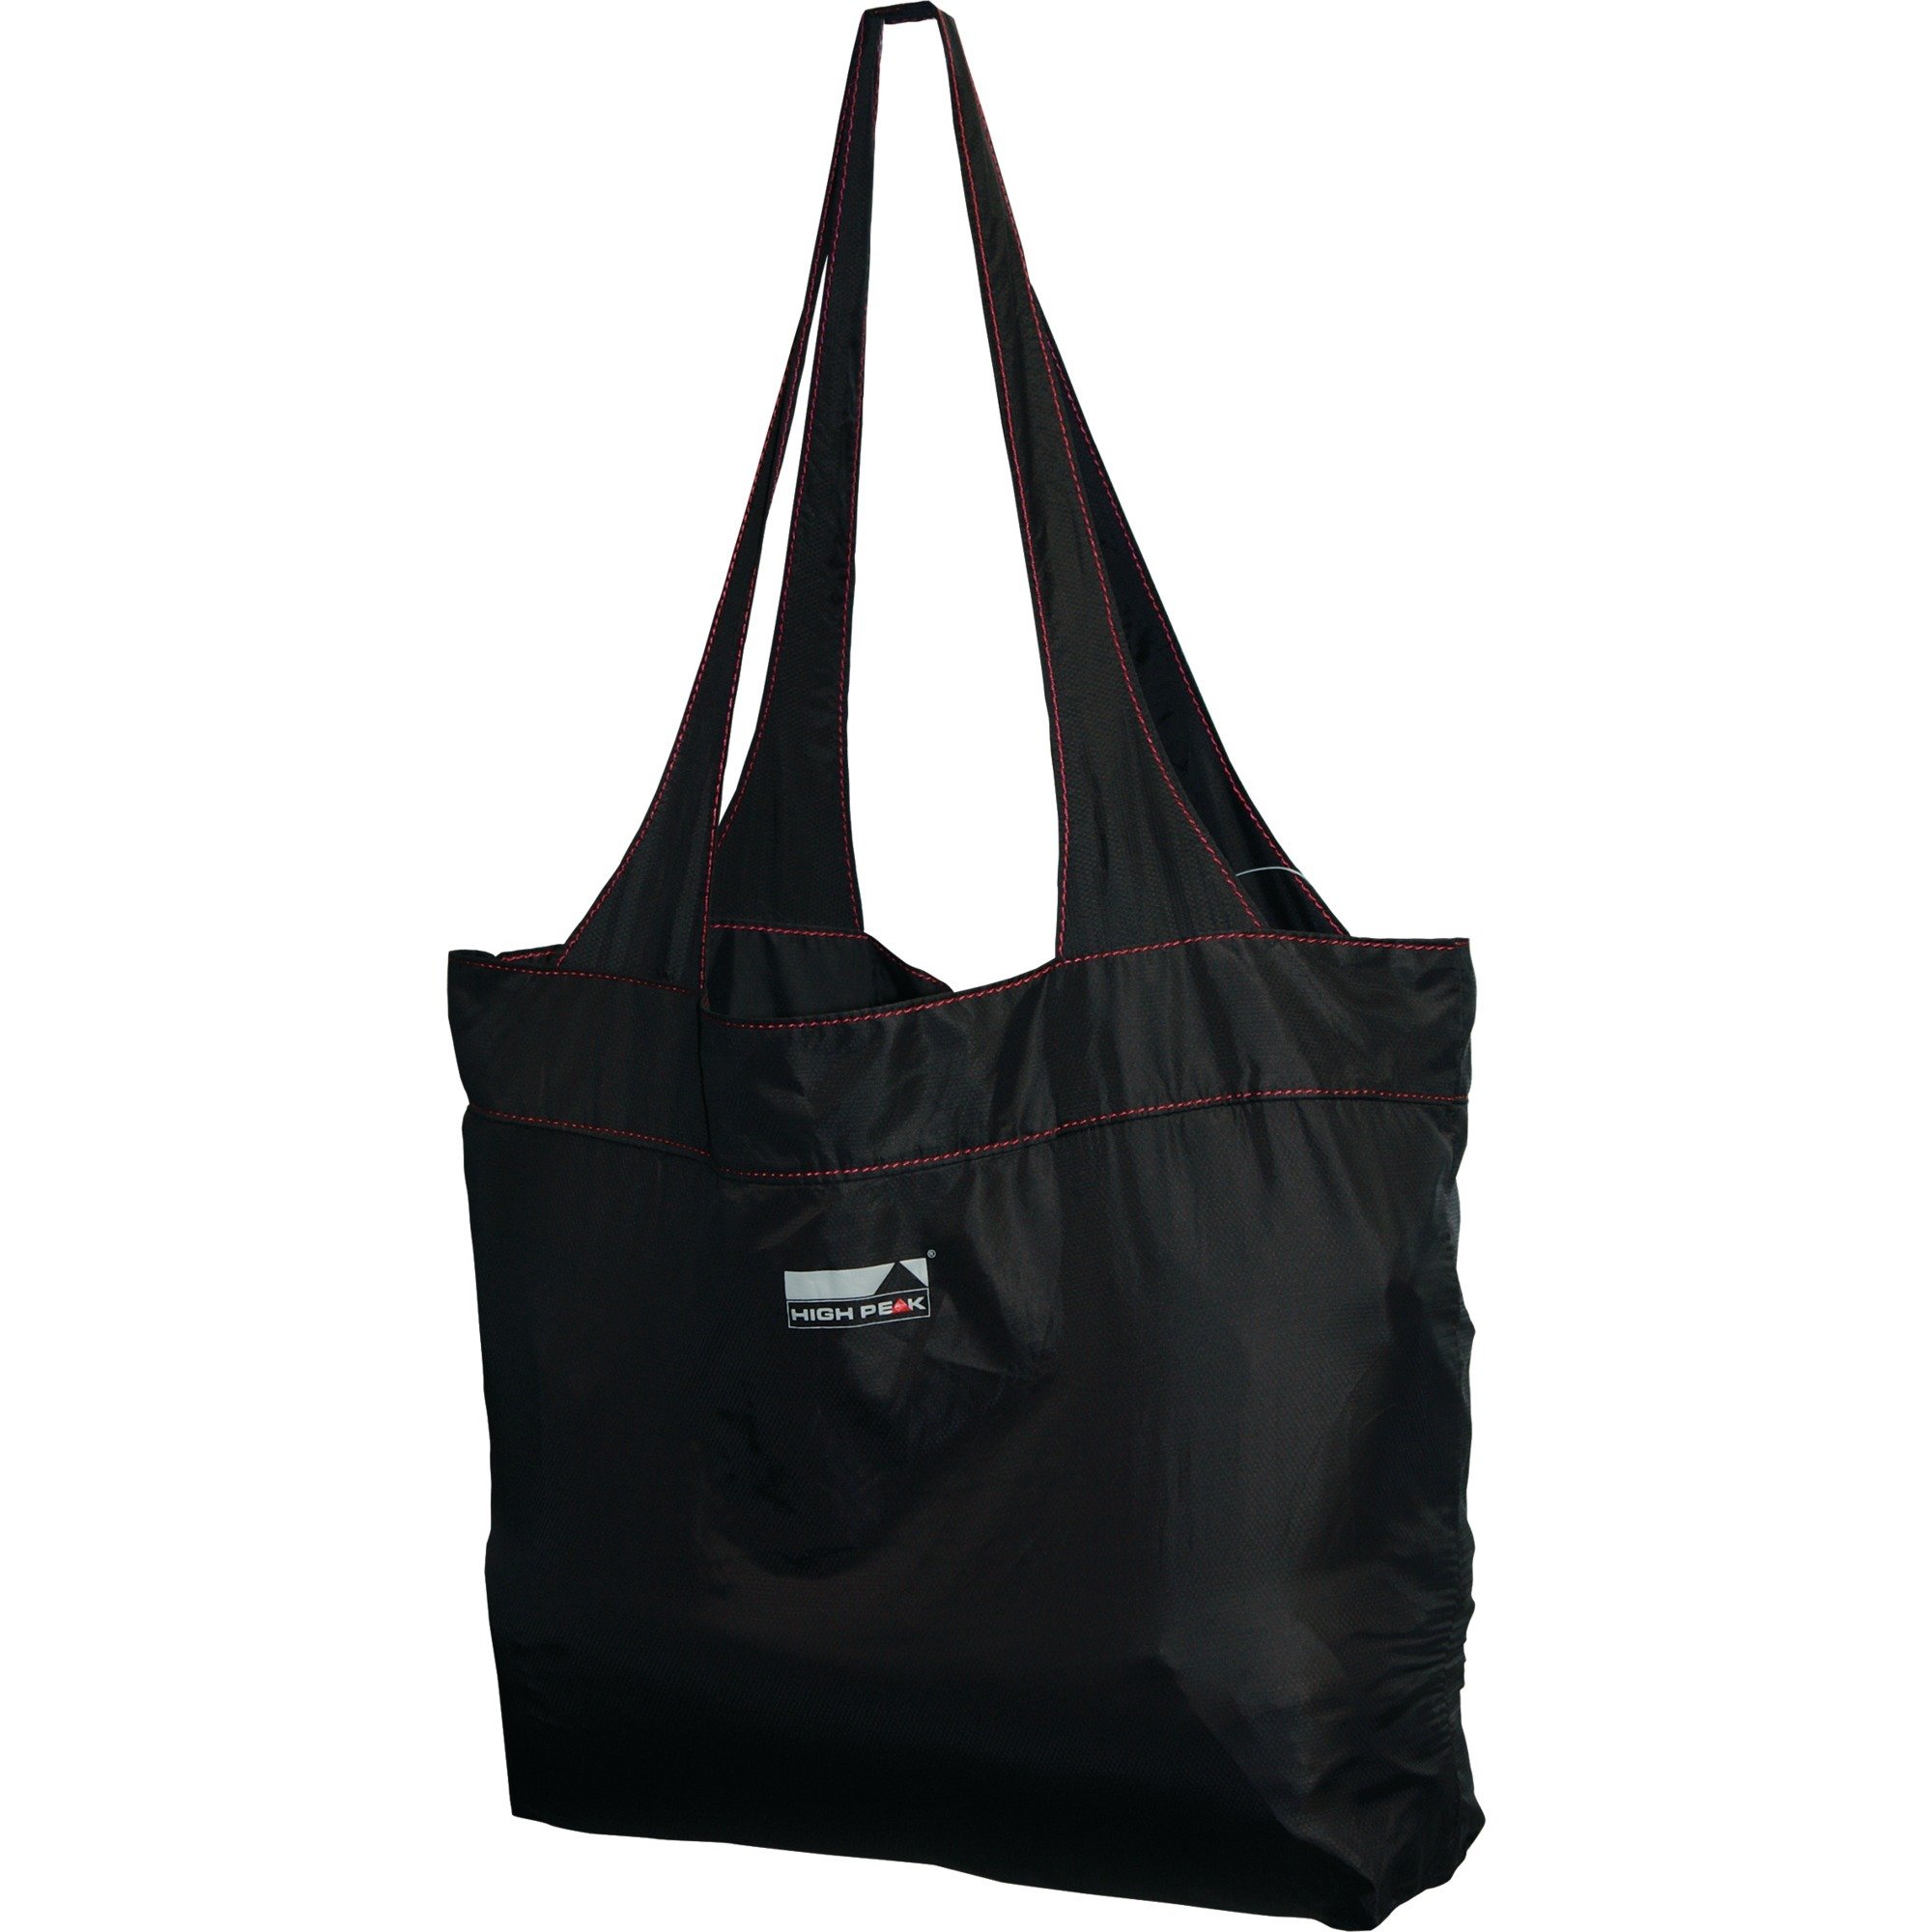 Image of Alternate - Electra Shopping Bag, 12L, Tasche online einkaufen bei Alternate